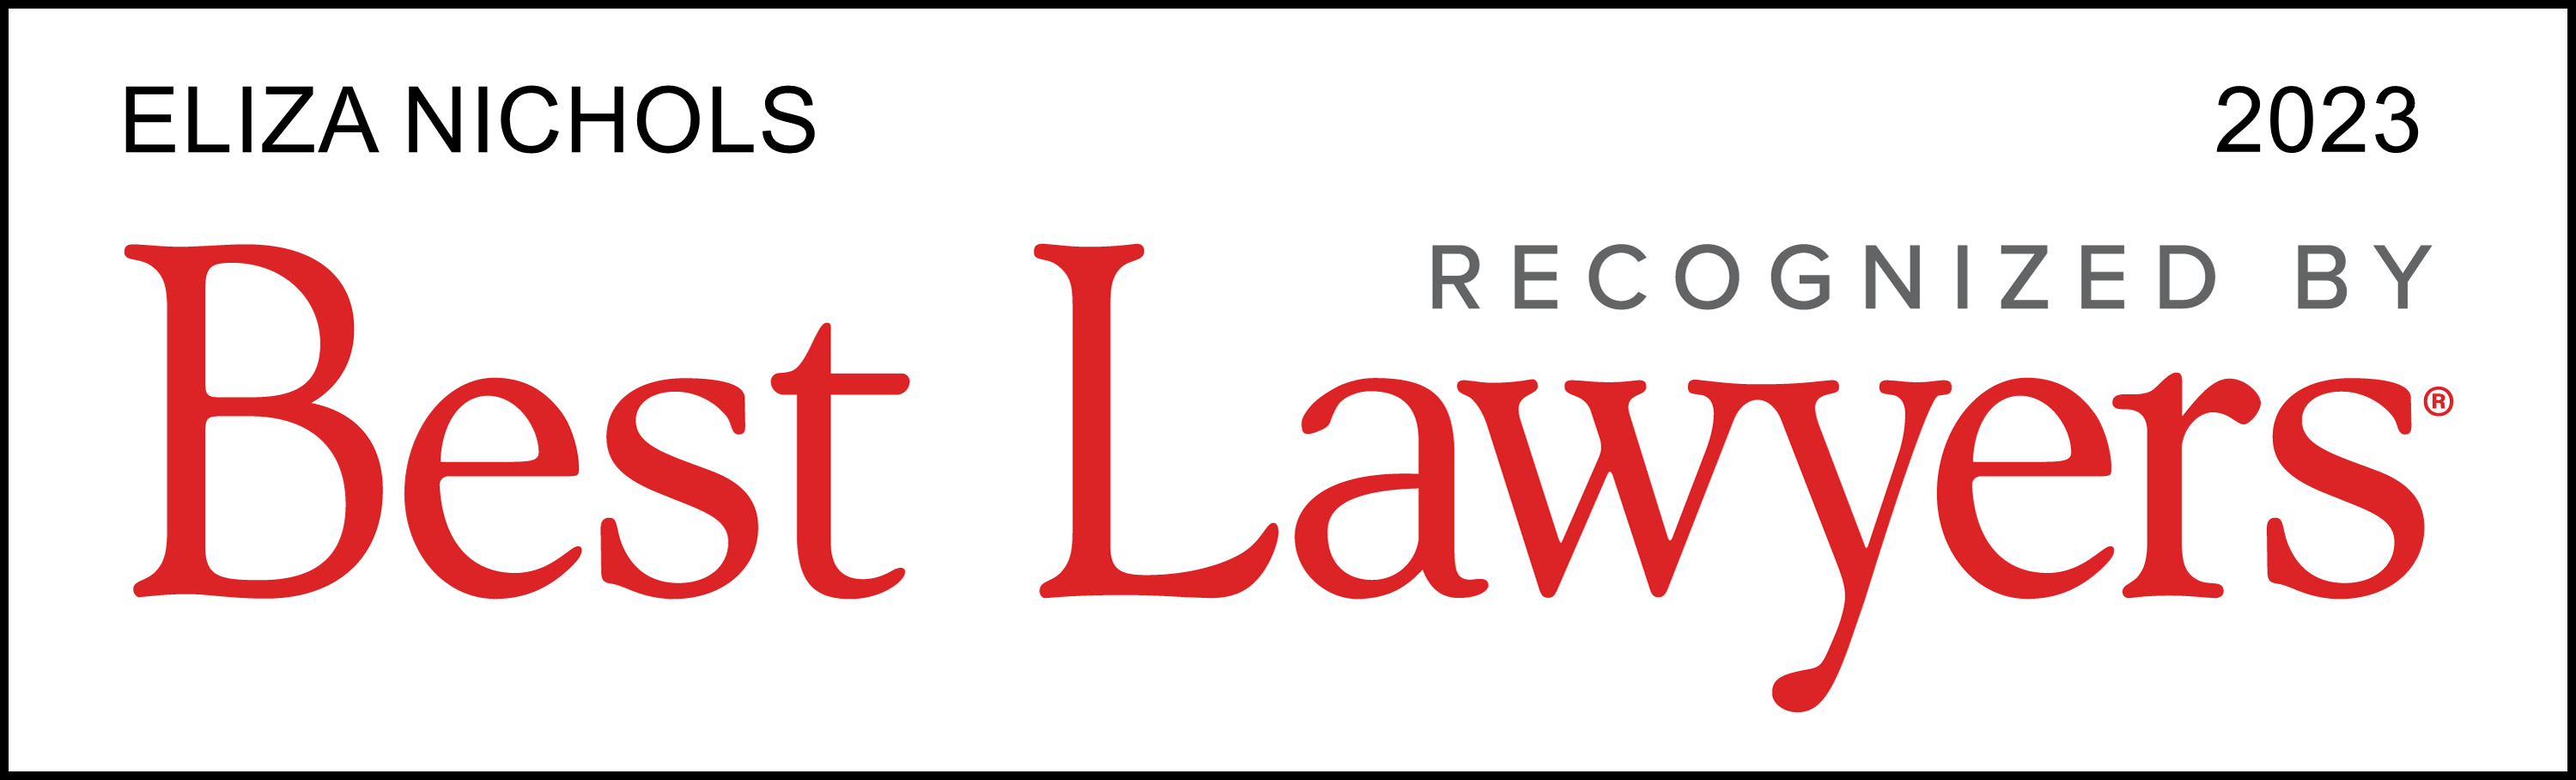 emn-best-lawyers-lawyer-logo